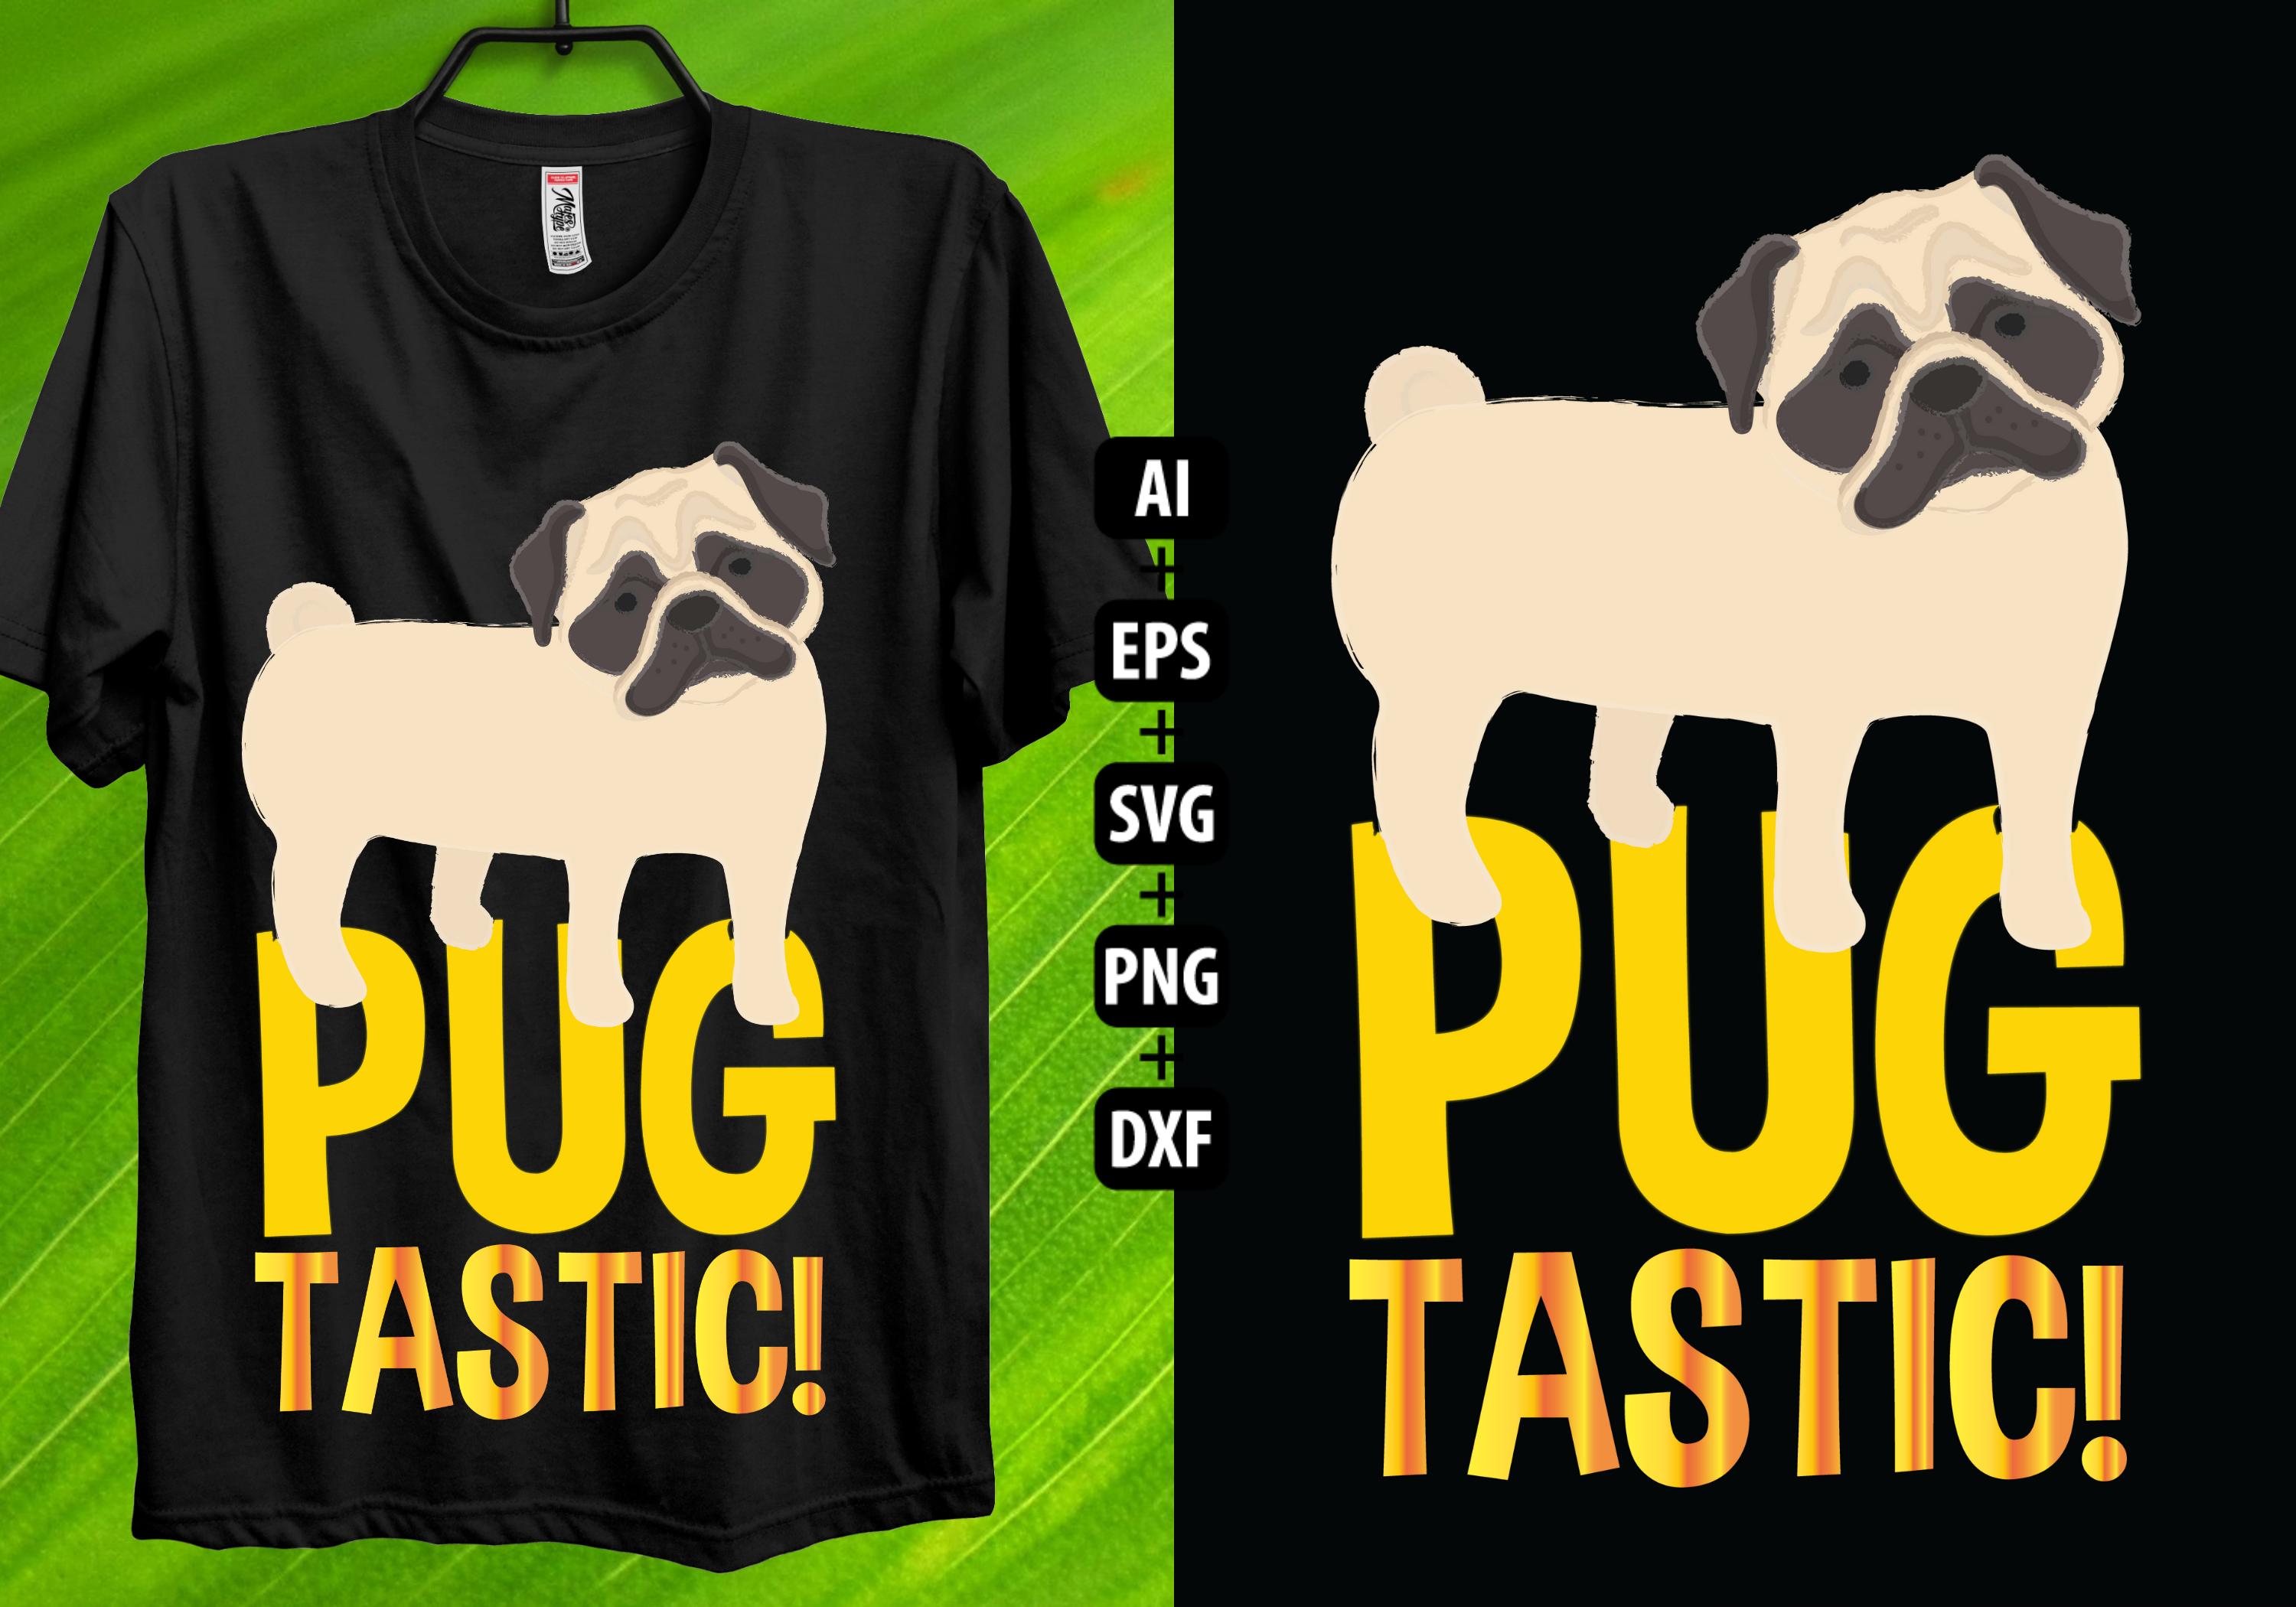 Pug Tastic